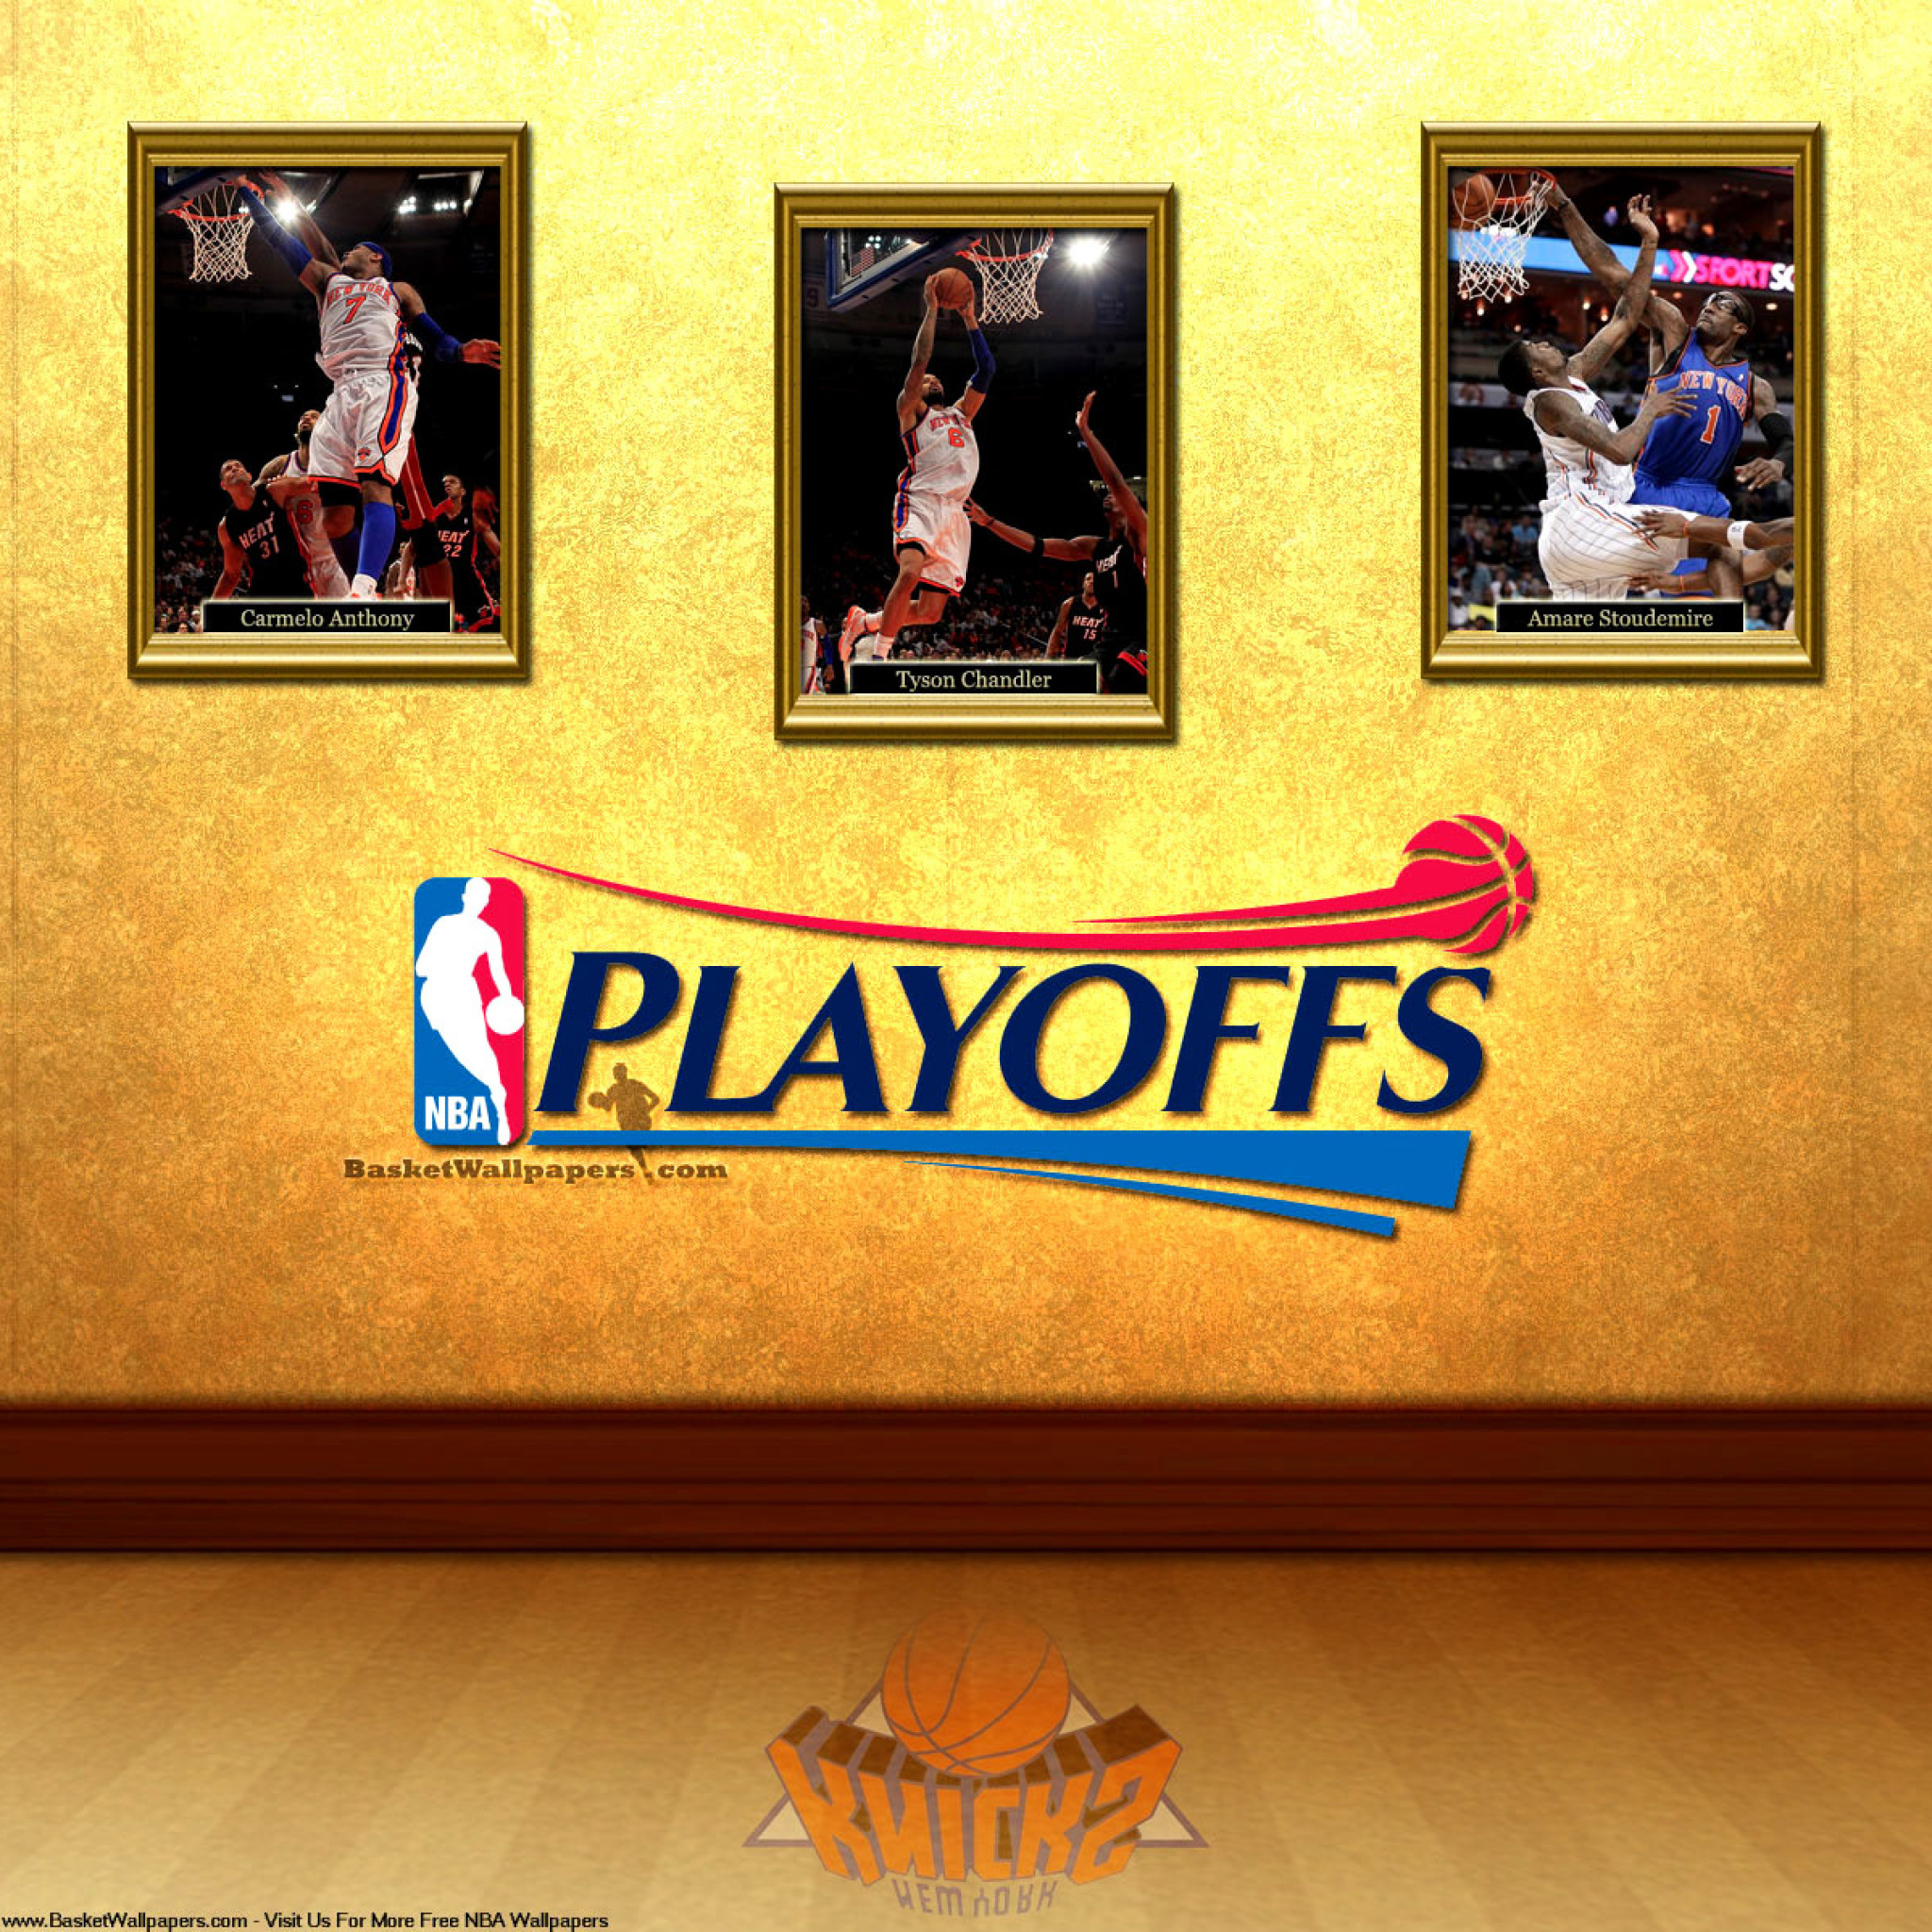 New York Knicks NBA Playoffs wallpaper 2048x2048